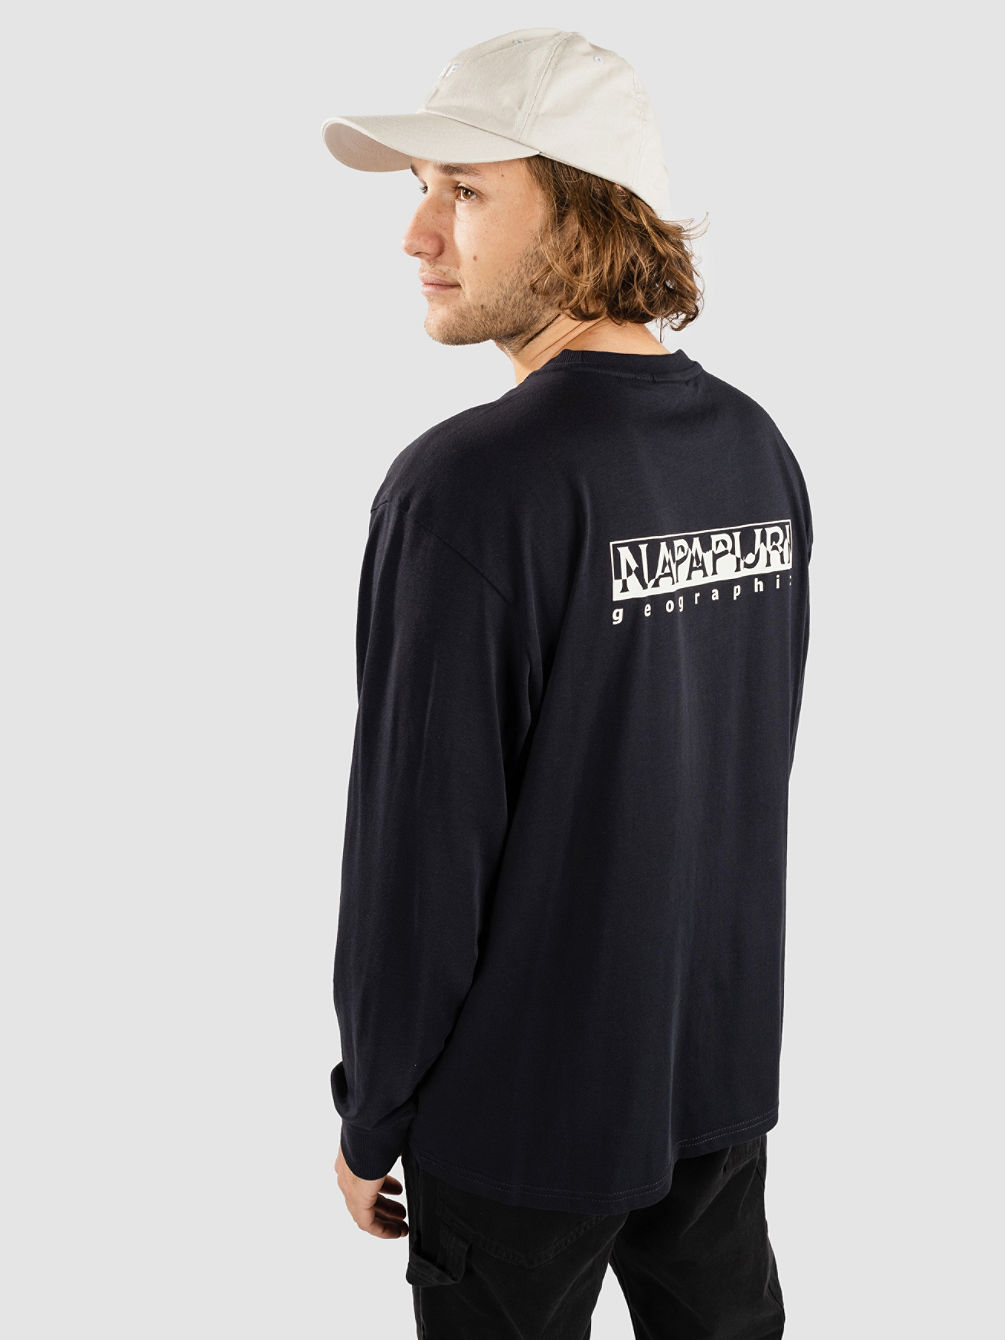 S-Telemark Camisa Manga Comprida